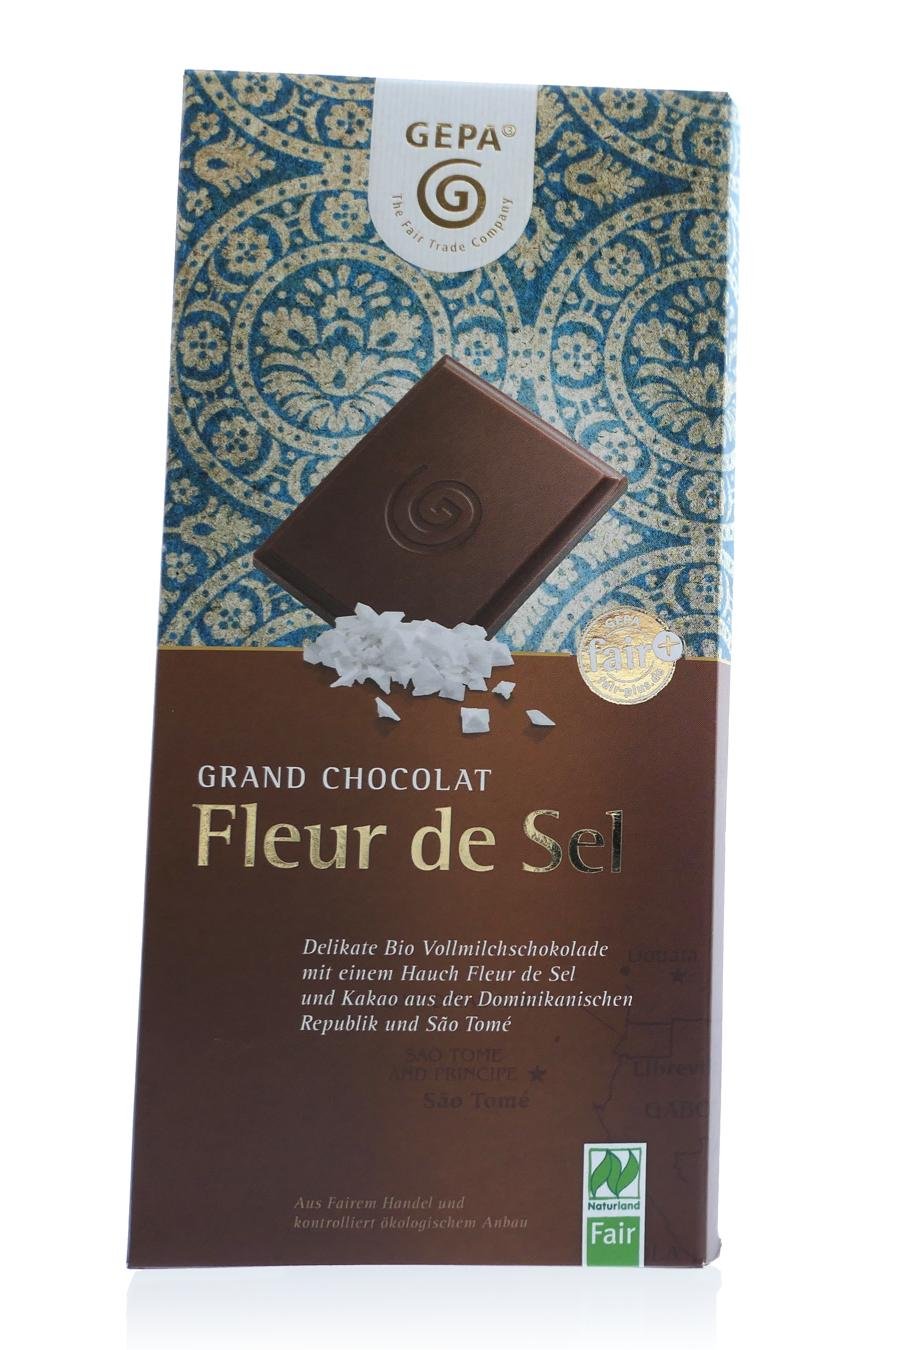 Grand Chocolat Fleur de Sel (c) M. Kerk